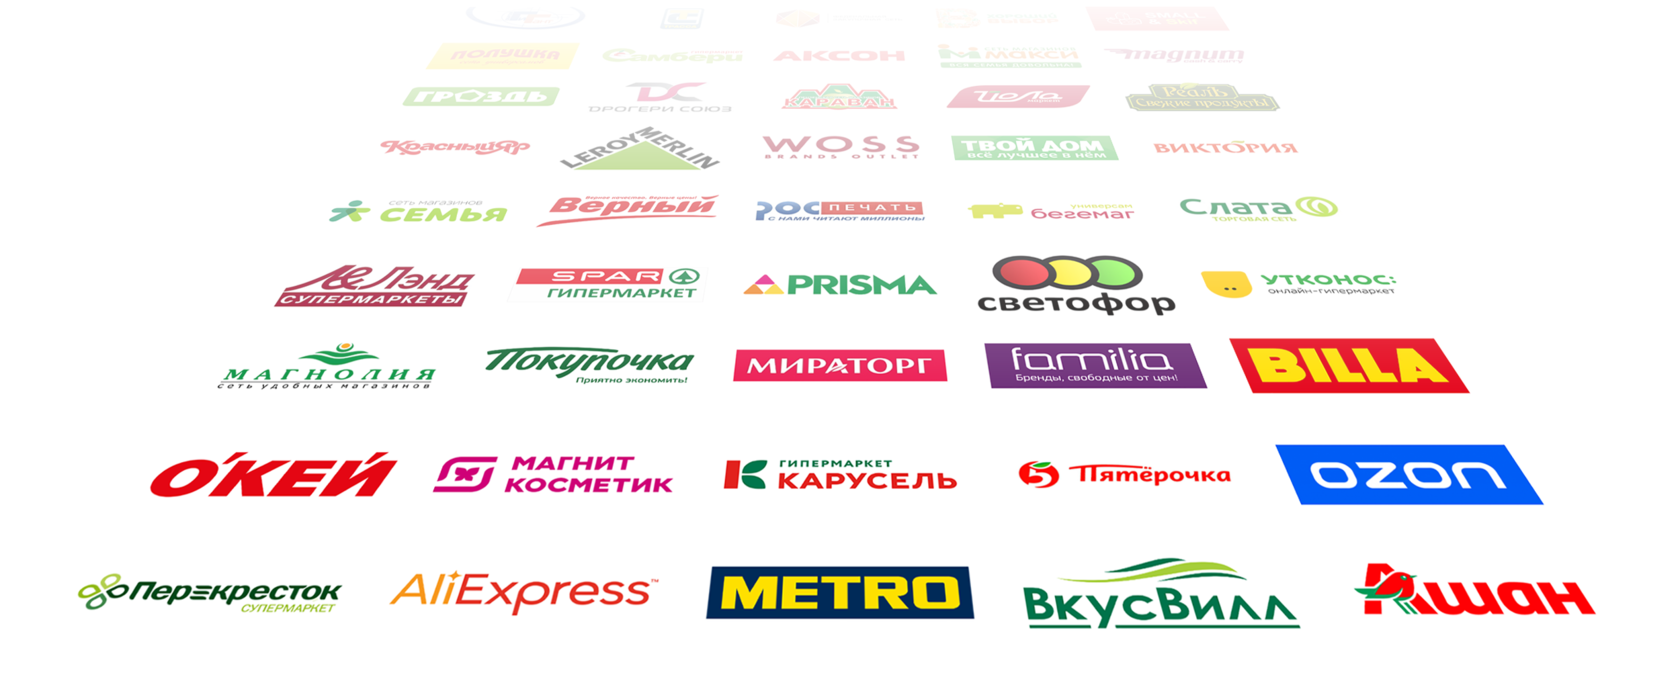 Федеральная сеть компания. Сетевые магазины названия. Крупные сетевые магазины. Торговые сети России. Логотипы торговых сетей.